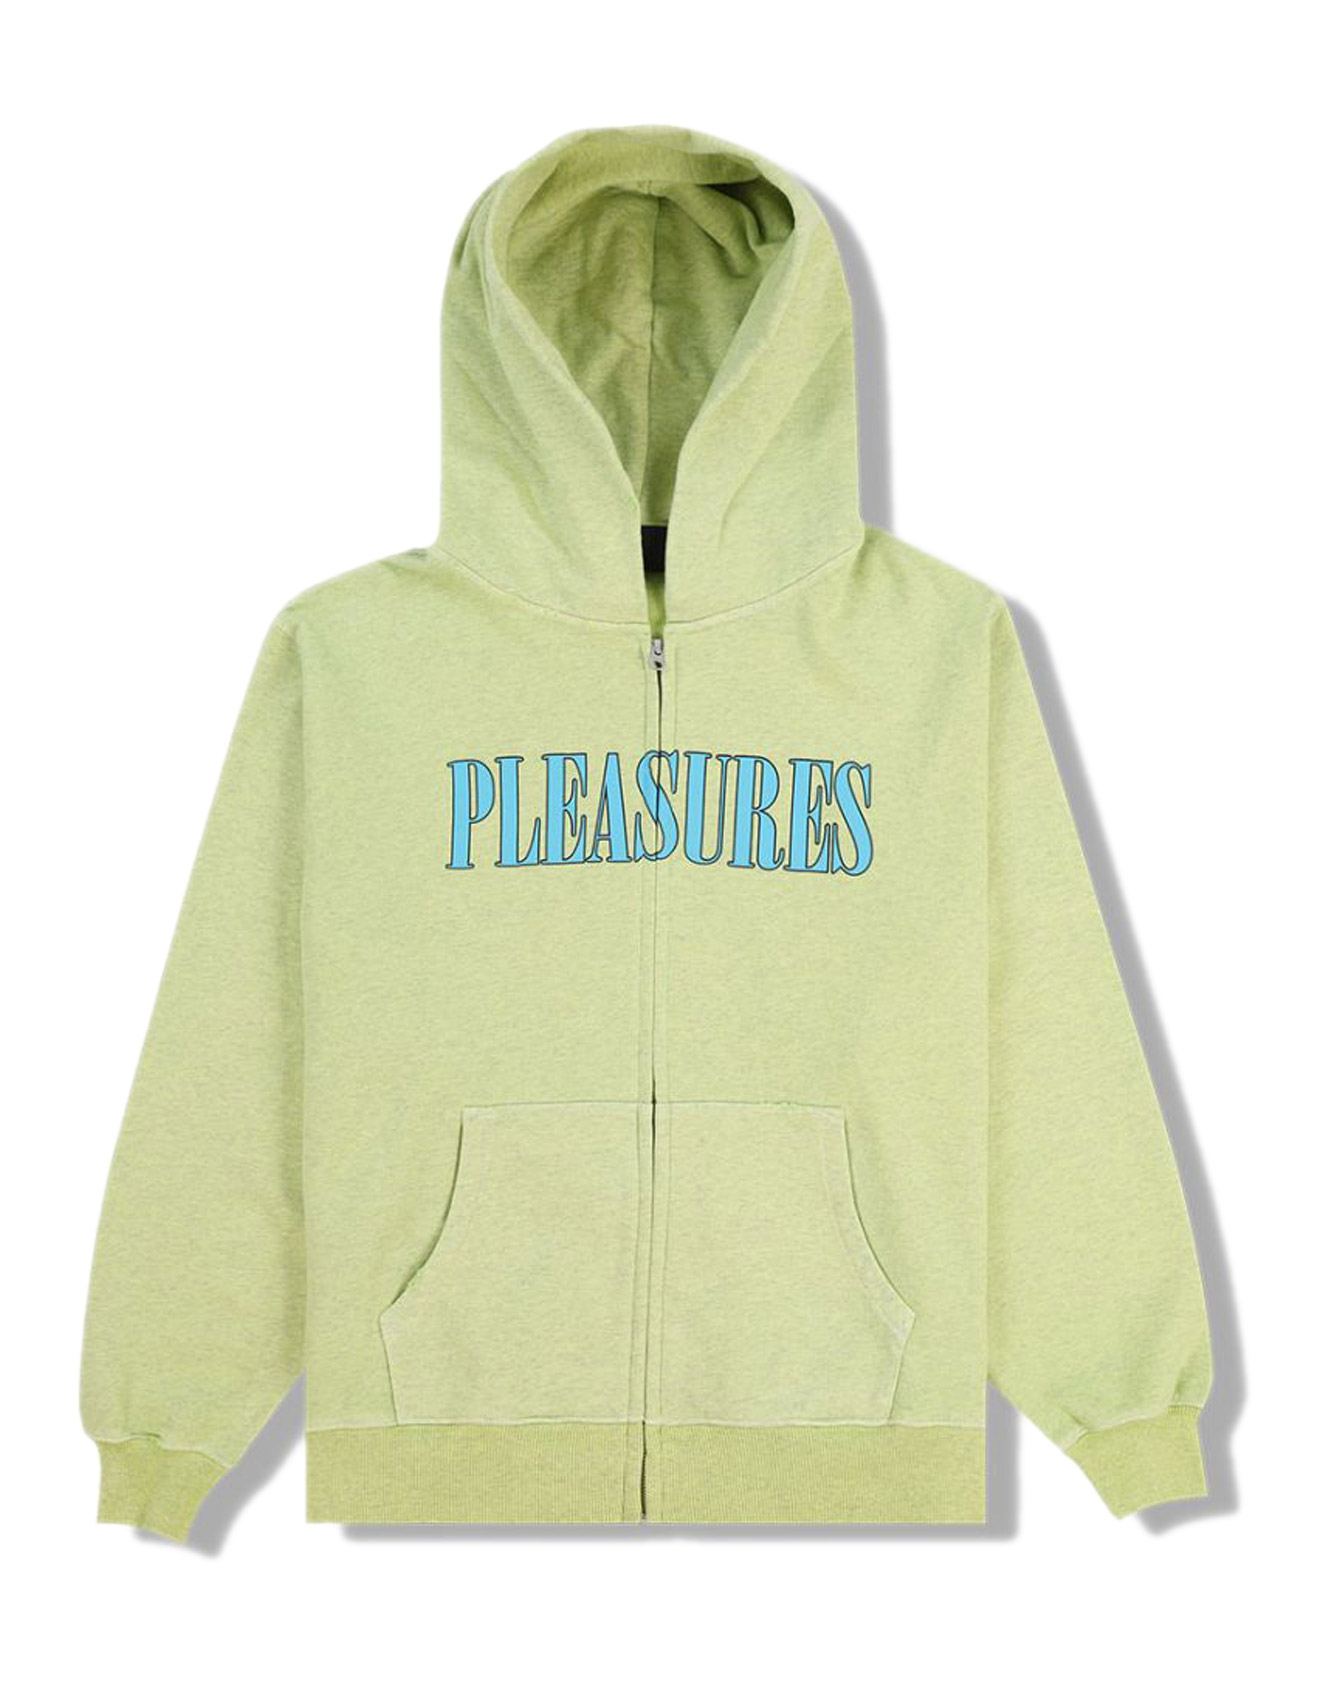 PLEASURES – Onyx zip up hoodie